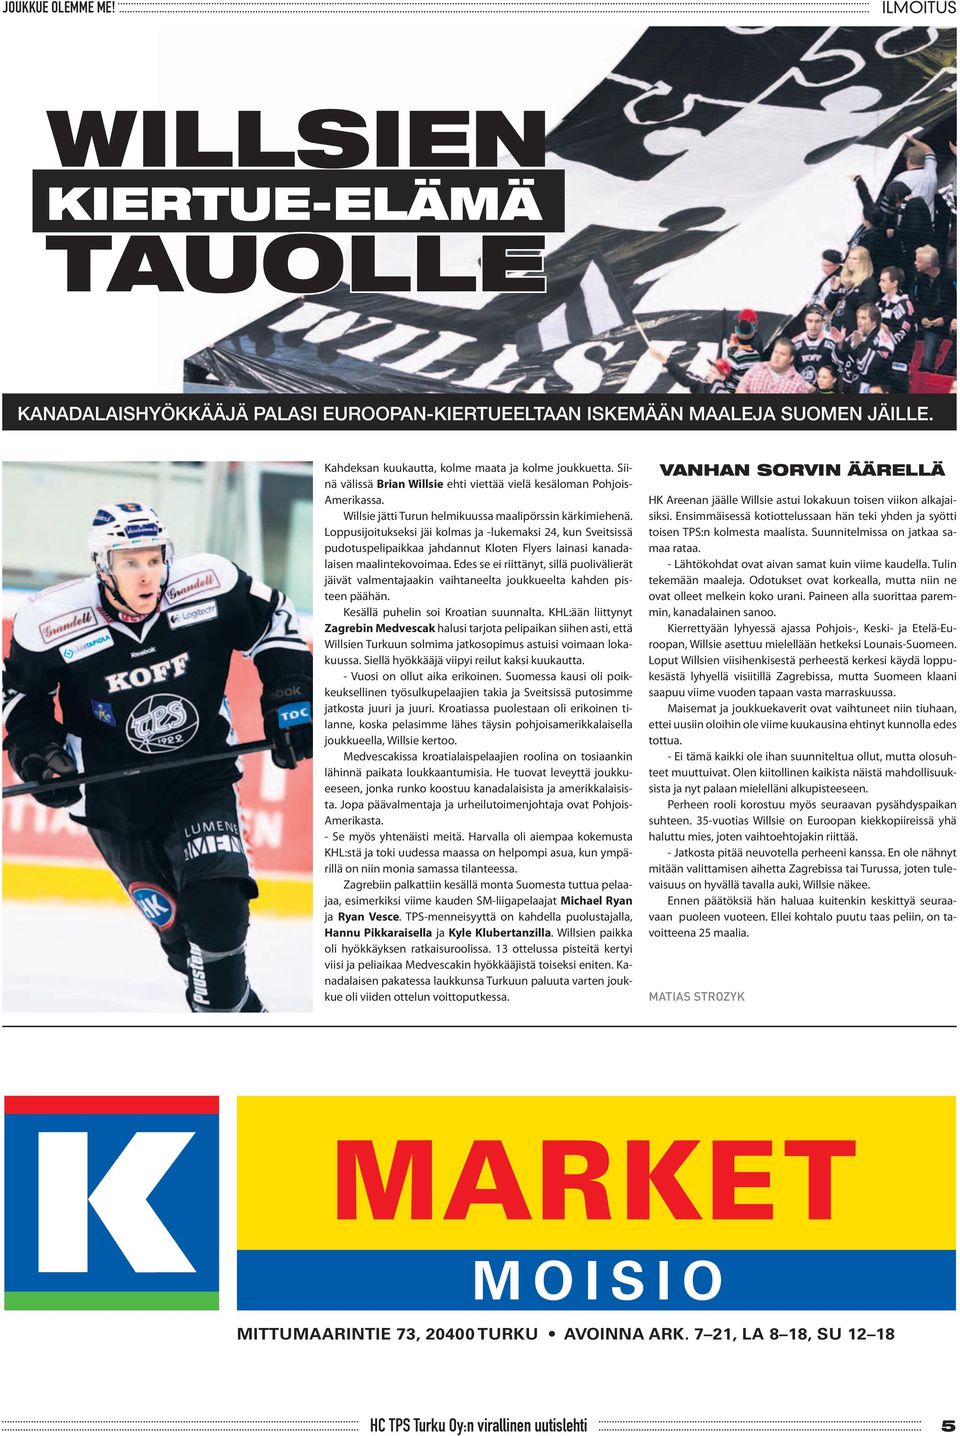 Loppusijoitukseksi jäi kolmas ja -lukemaksi 24, kun Sveitsissä pudotuspelipaikkaa jahdannut Kloten Flyers lainasi kanadalaisen maalintekovoimaa.